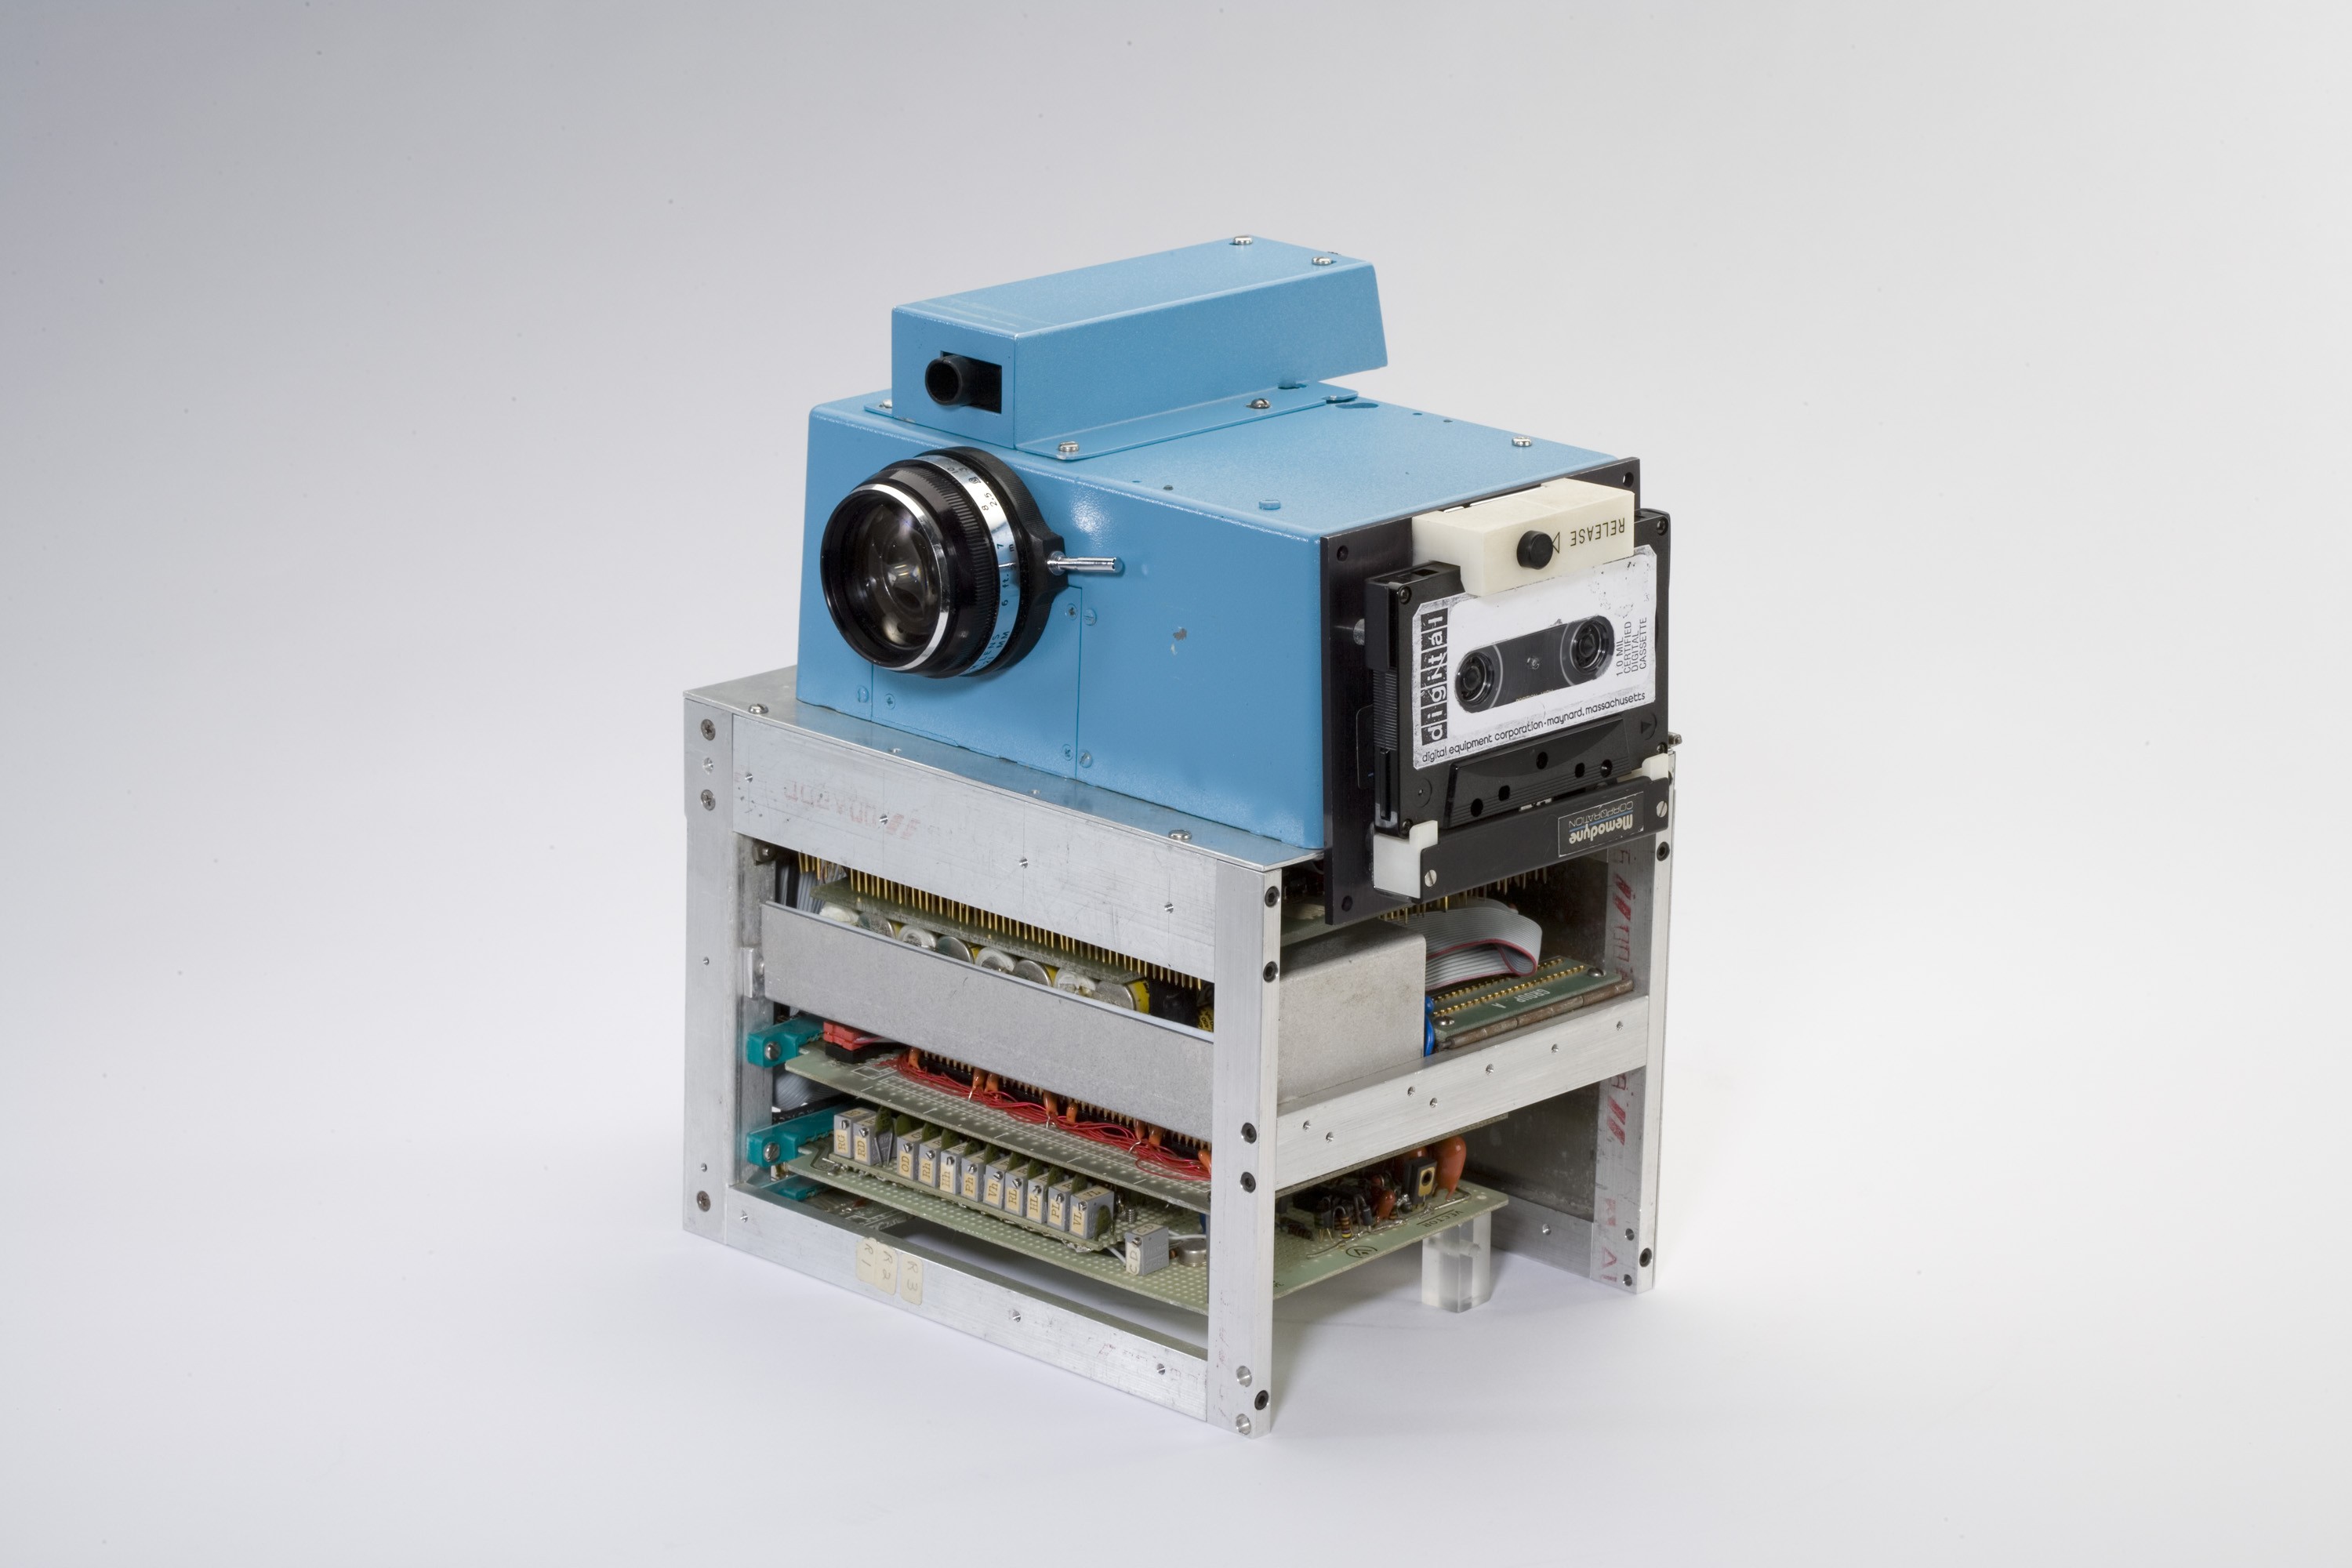 first digital camera ever